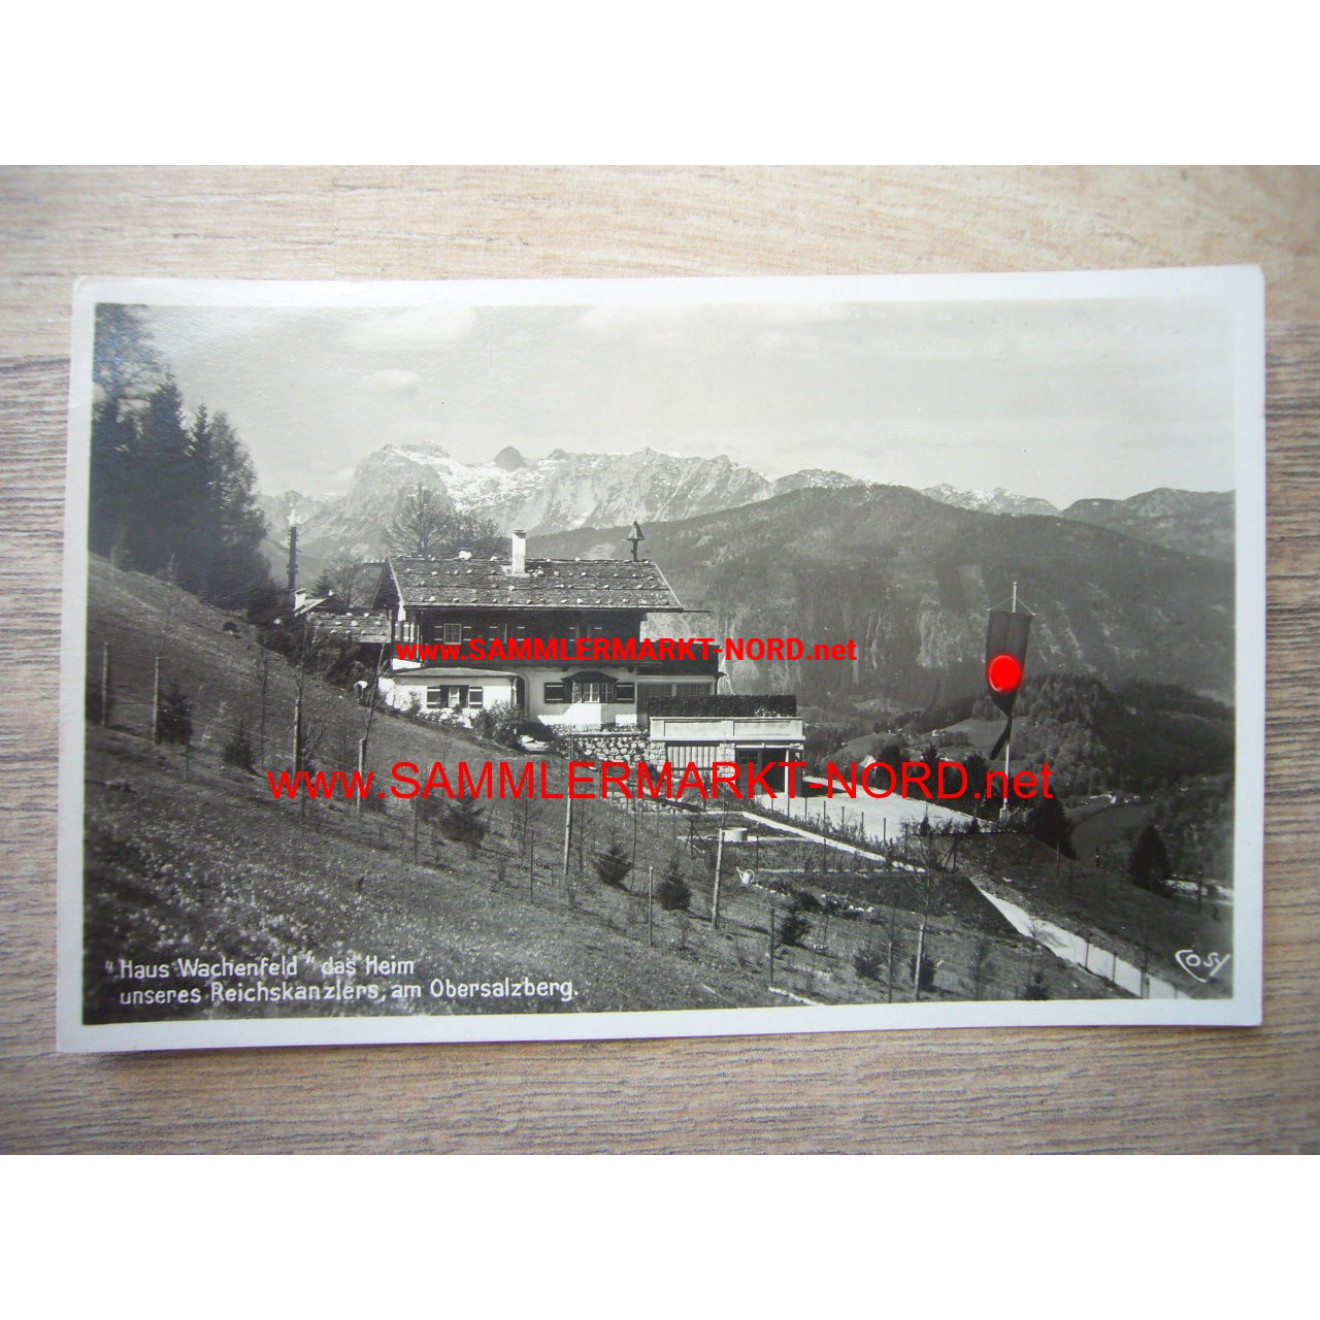 House Wachenfeld at Obersalzberg - Postcard